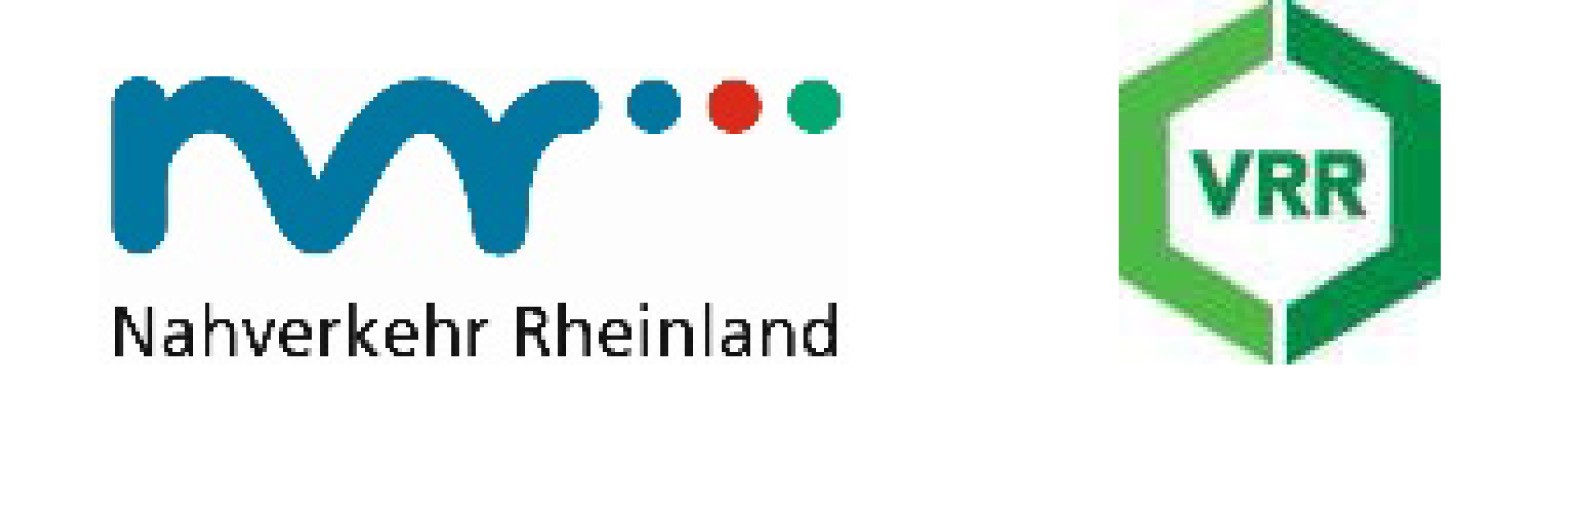 Die verkehrliche Entwicklung hat eine herausragende Bedeutung für die Zukunftsfähigkeit des Rheinischen Reviers. Aus diesem Grund hat der Nahverkehr Rheinland (NVR) gemeinsam mit dem Verkehrsverbund Rhein-Ruhr (VRR) zehn Projektskizzen für die Förderung im Rahmen des „SofortprogrammPLUS“ der Zukunftsagentur Rheinisches Revier (ZRR) eingereicht.